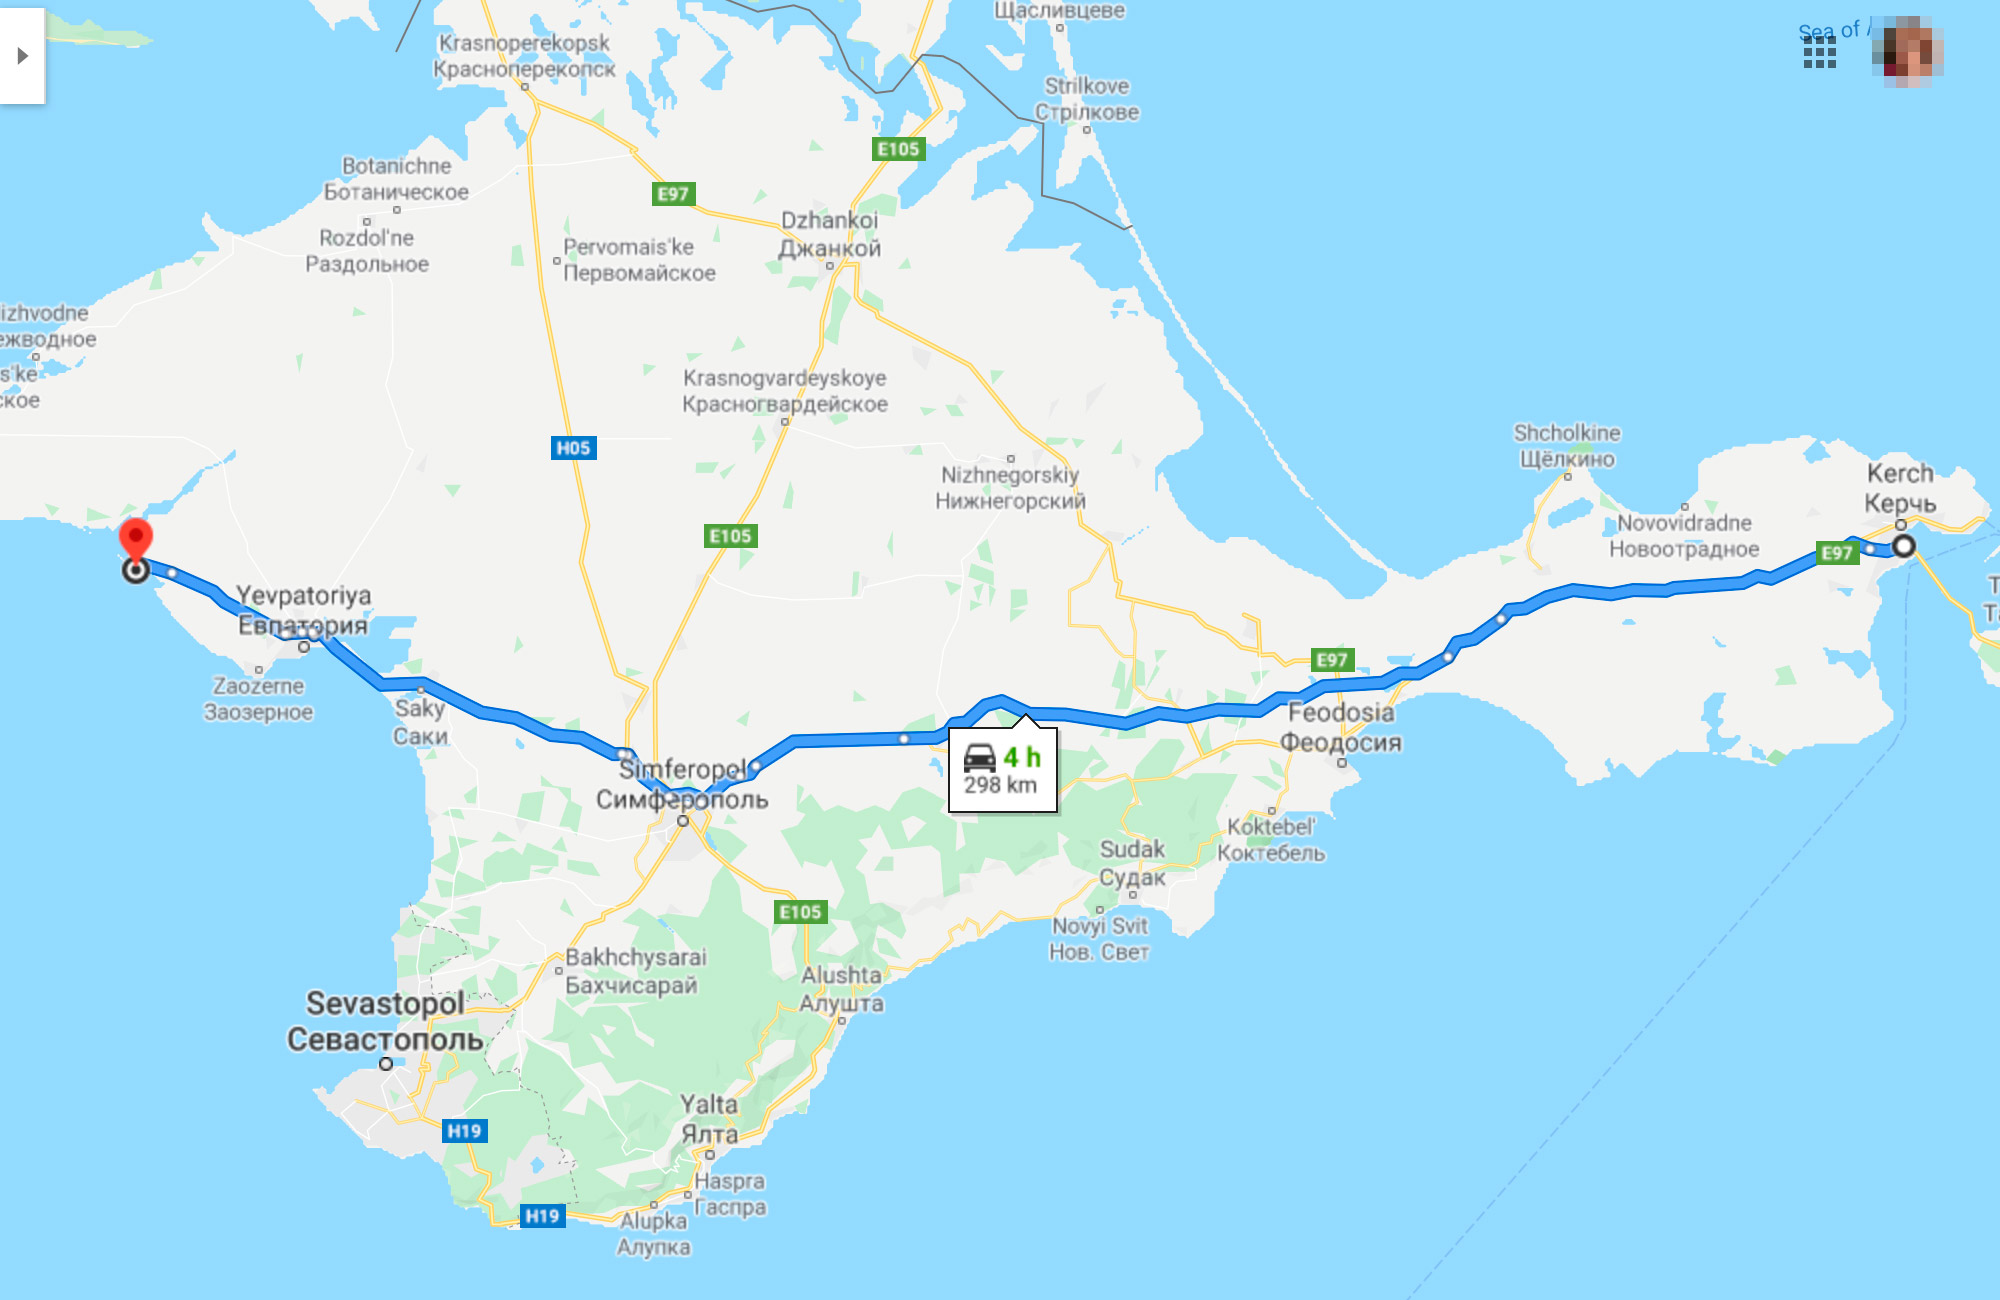 Наш путь через Крым до первой точки маршрута не проходил вдоль моря. Мы ехали более прямой и короткой дорогой